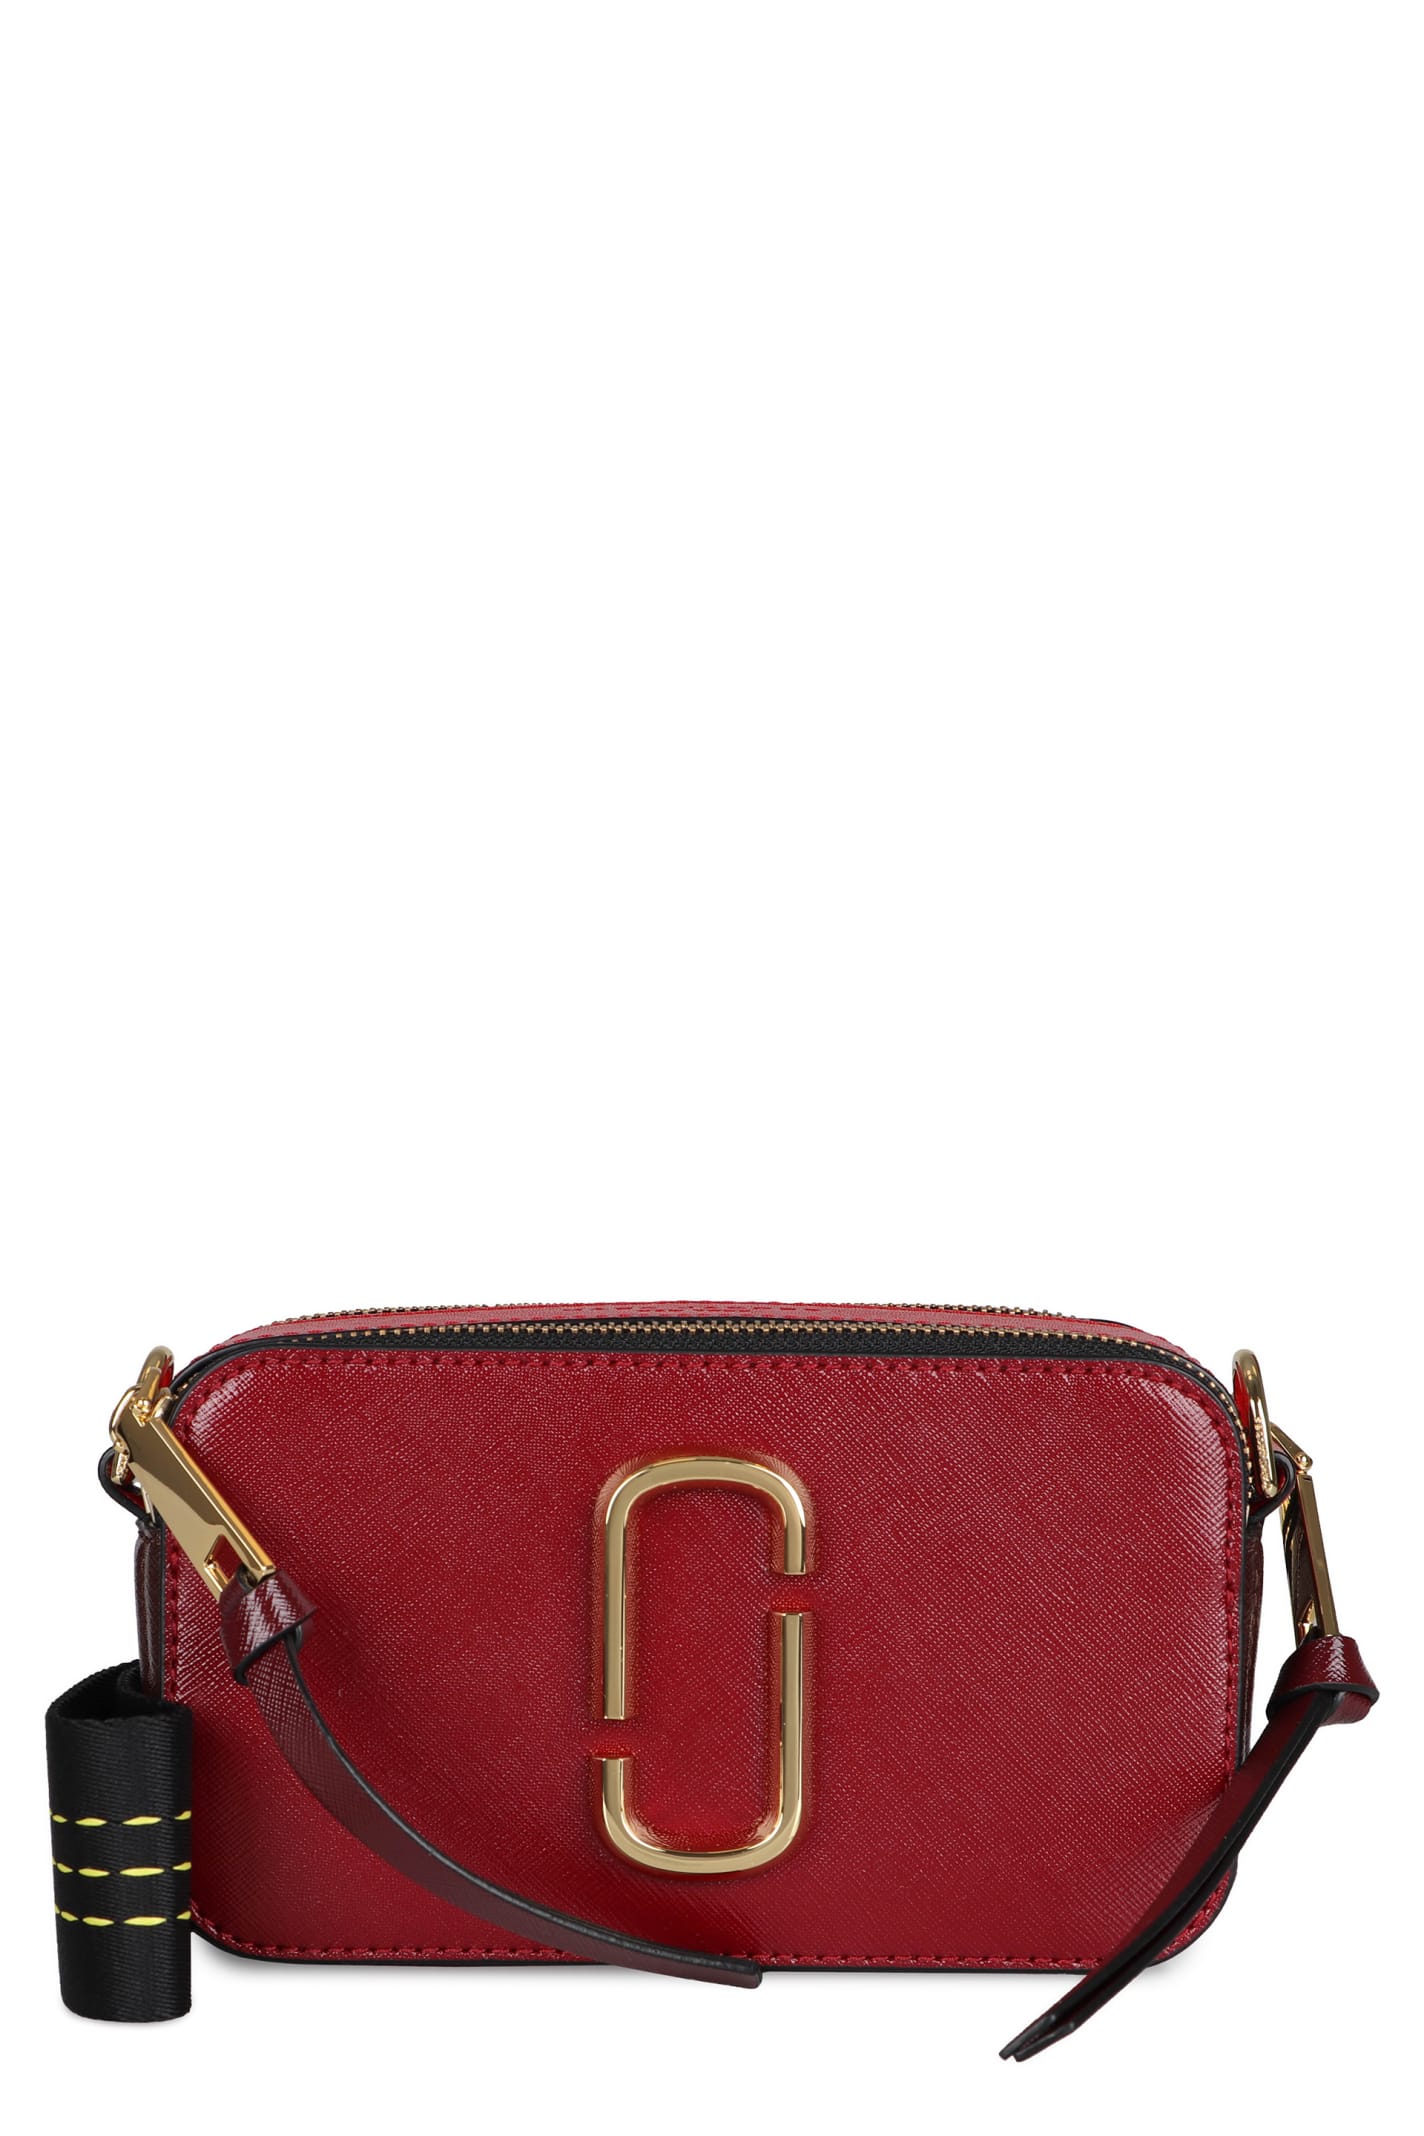 Marc Jacobs Snapshot Leather Shoulder Bag In Burgundy | ModeSens